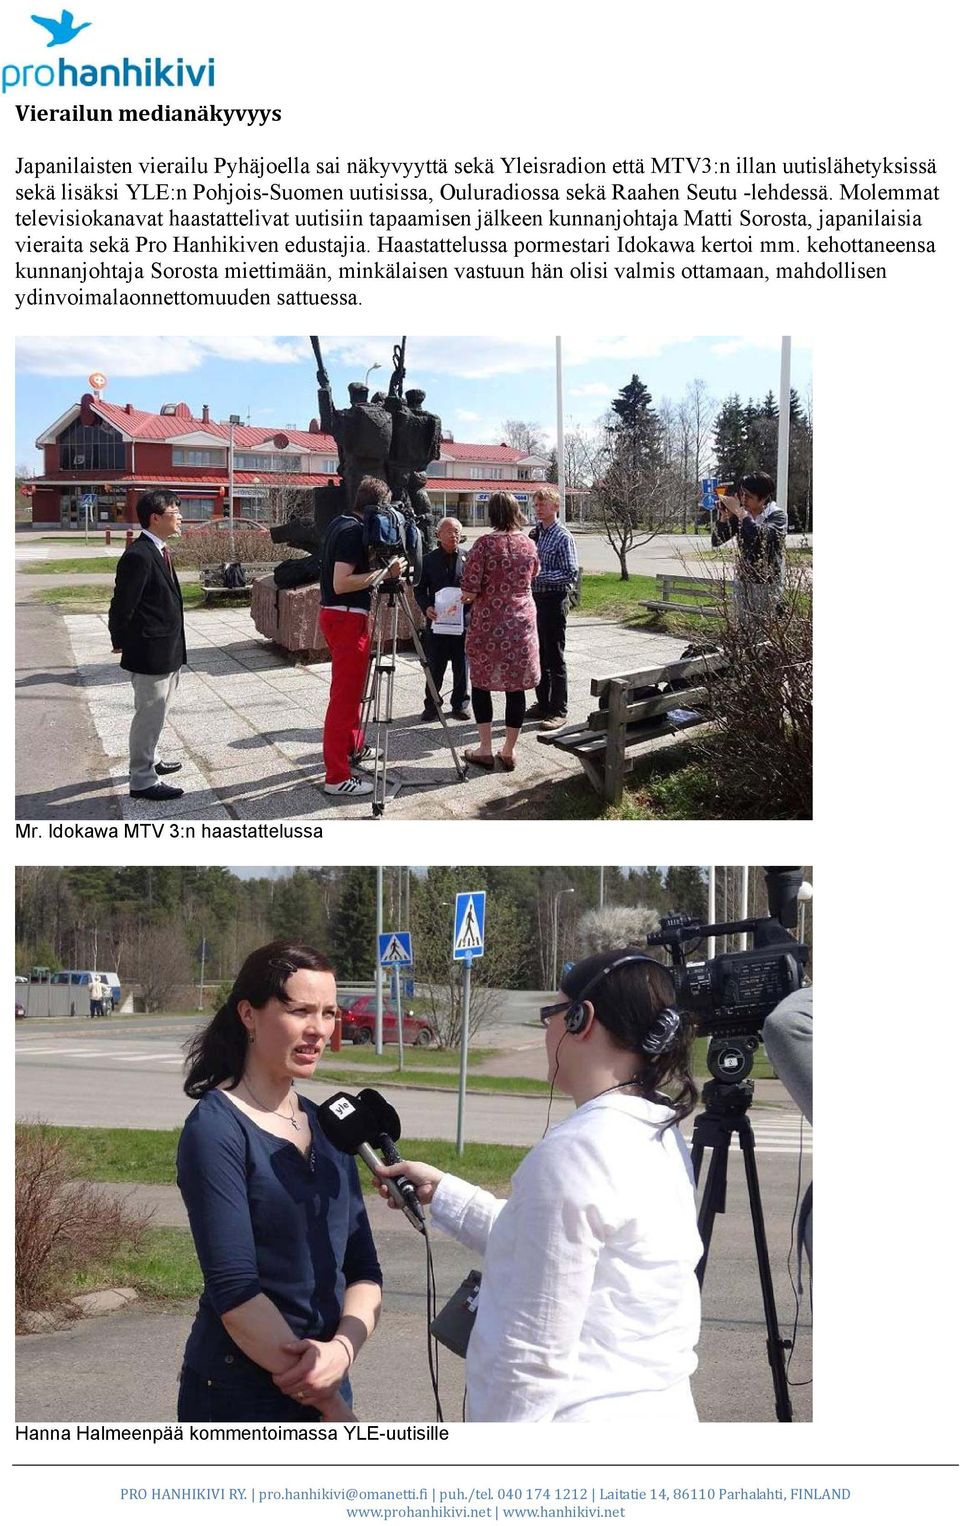 Molemmat televisiokanavat haastattelivat uutisiin tapaamisen jälkeen kunnanjohtaja Matti Sorosta, japanilaisia vieraita sekä Pro Hanhikiven edustajia.